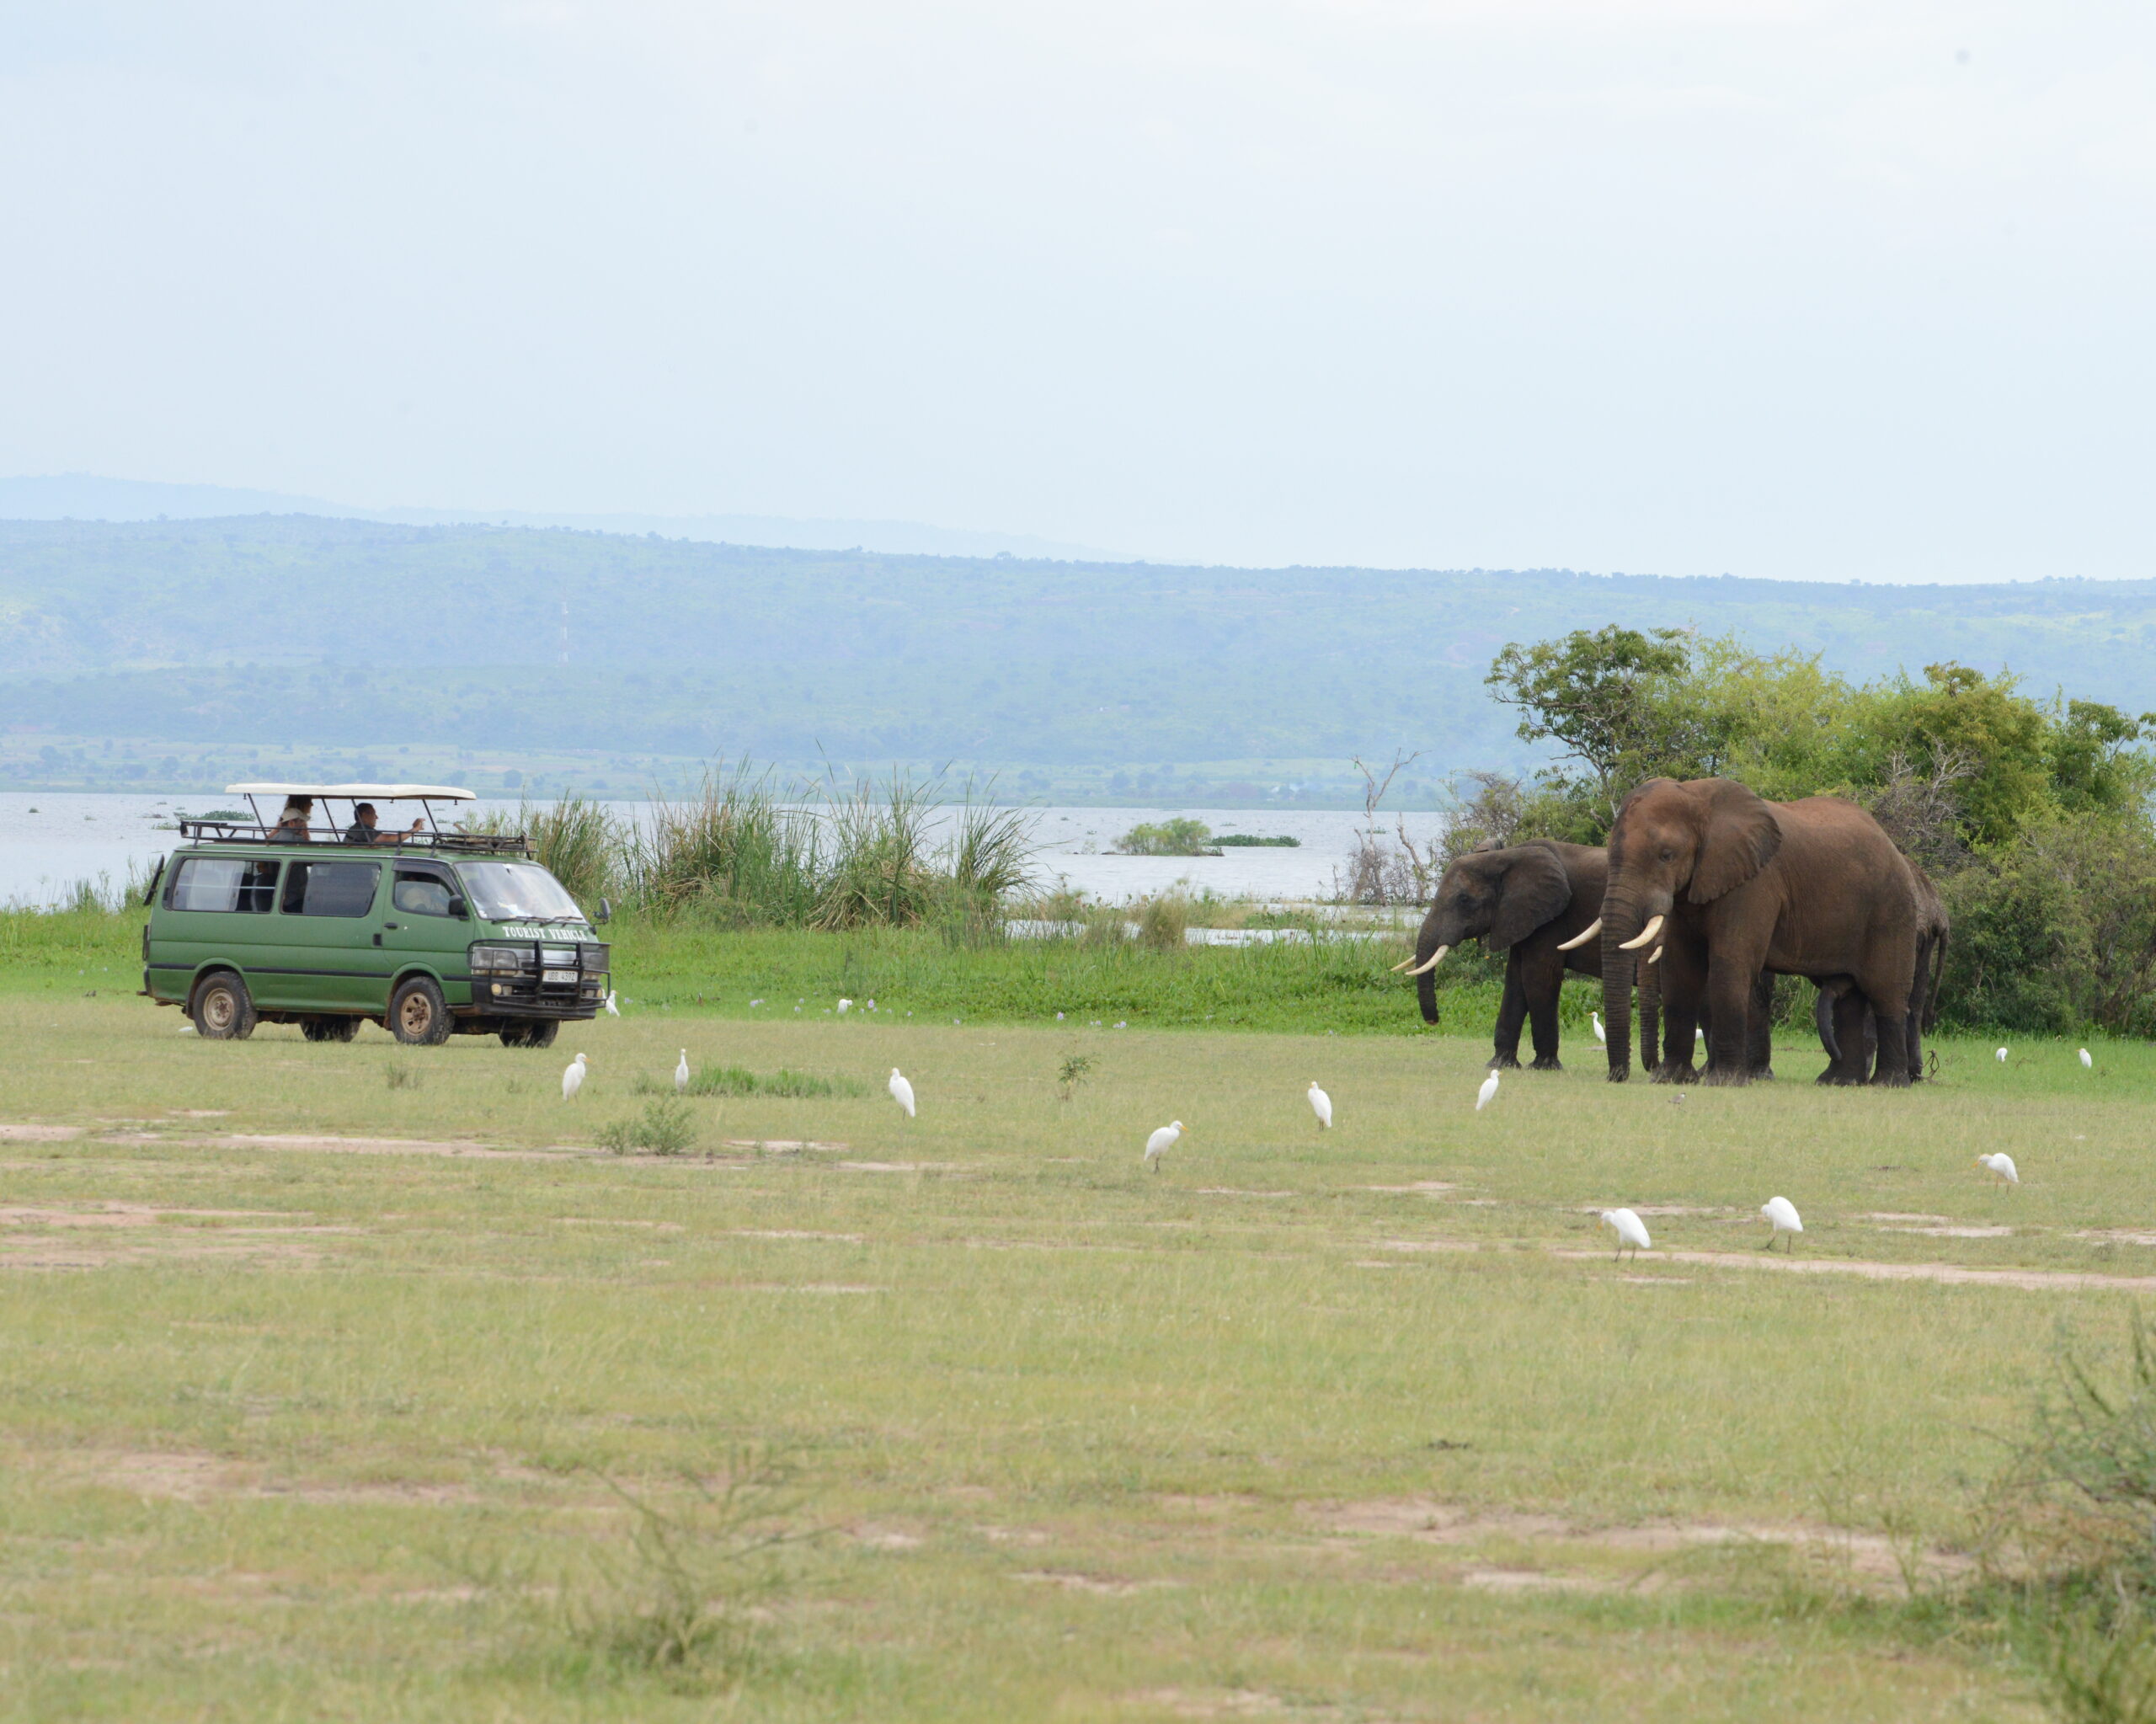 14 Days Uganda Big 5 safari with Primates & Tree Climbing Lions